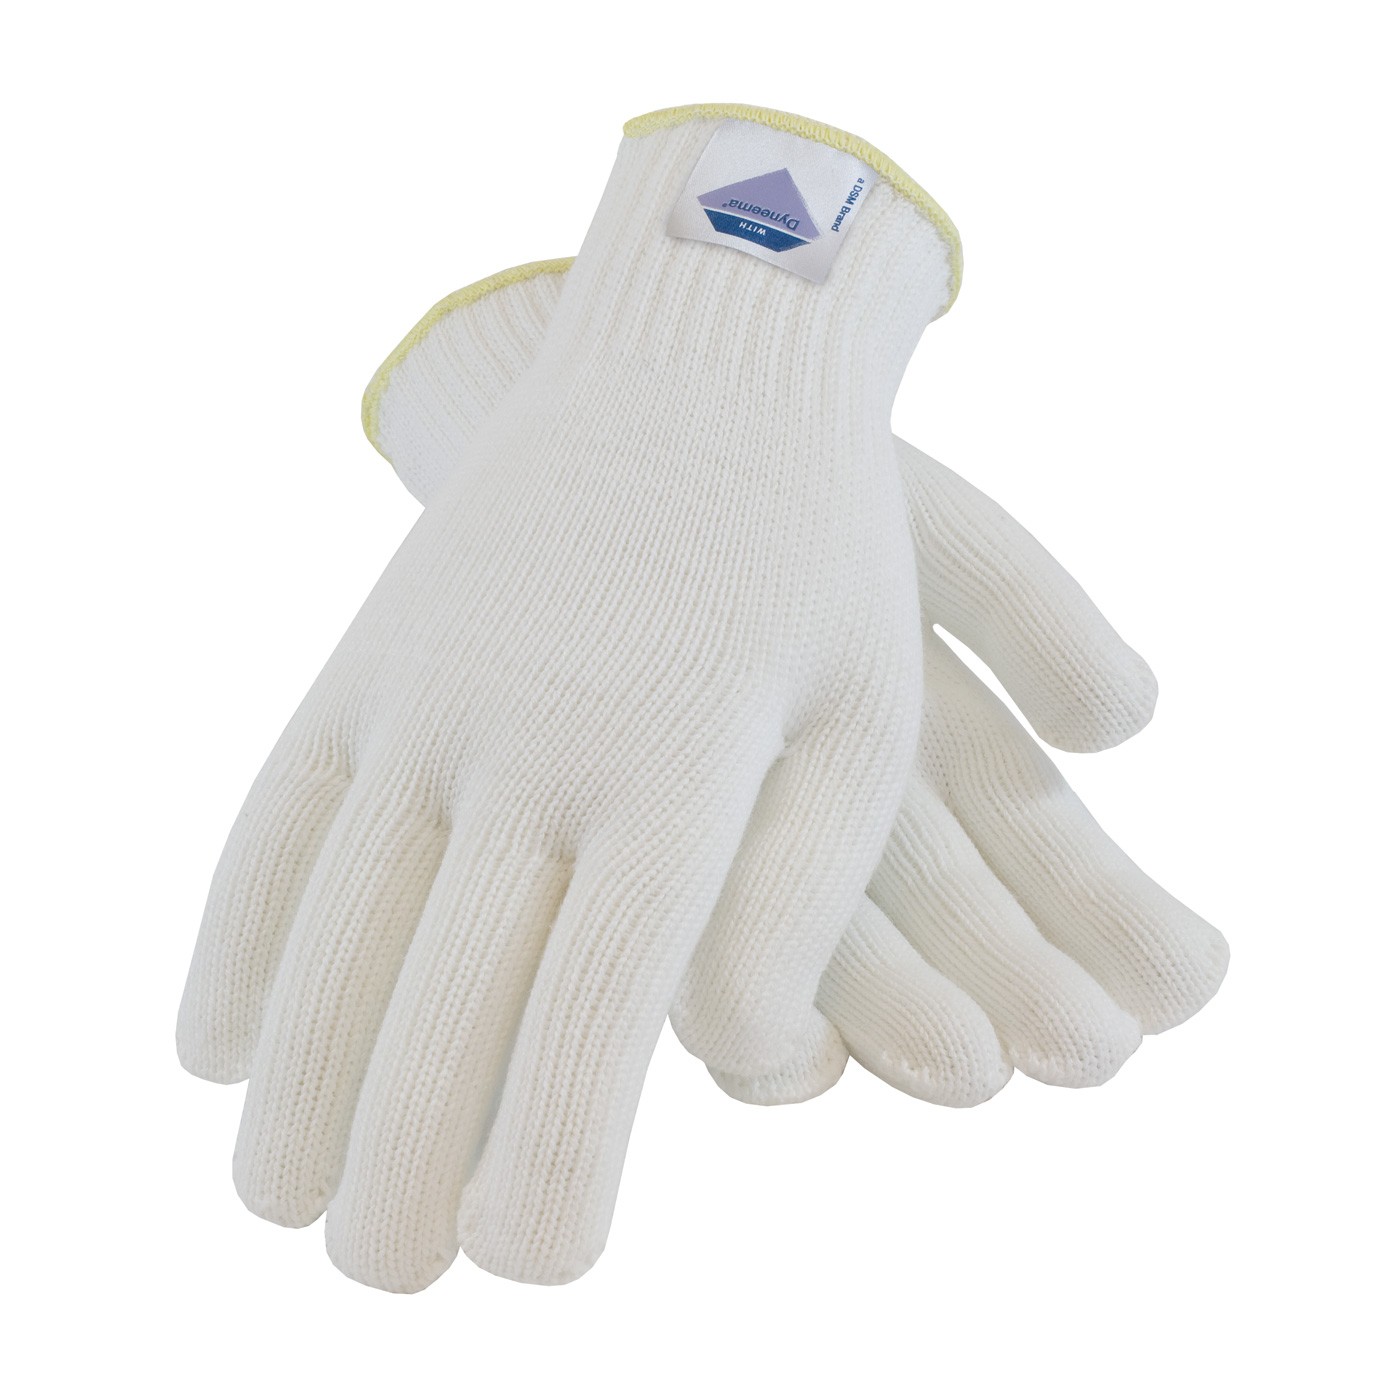 Gloves with Spun Dyneema, 7 Gauge, White, Medium Weight, ANSI2 Size X-Large